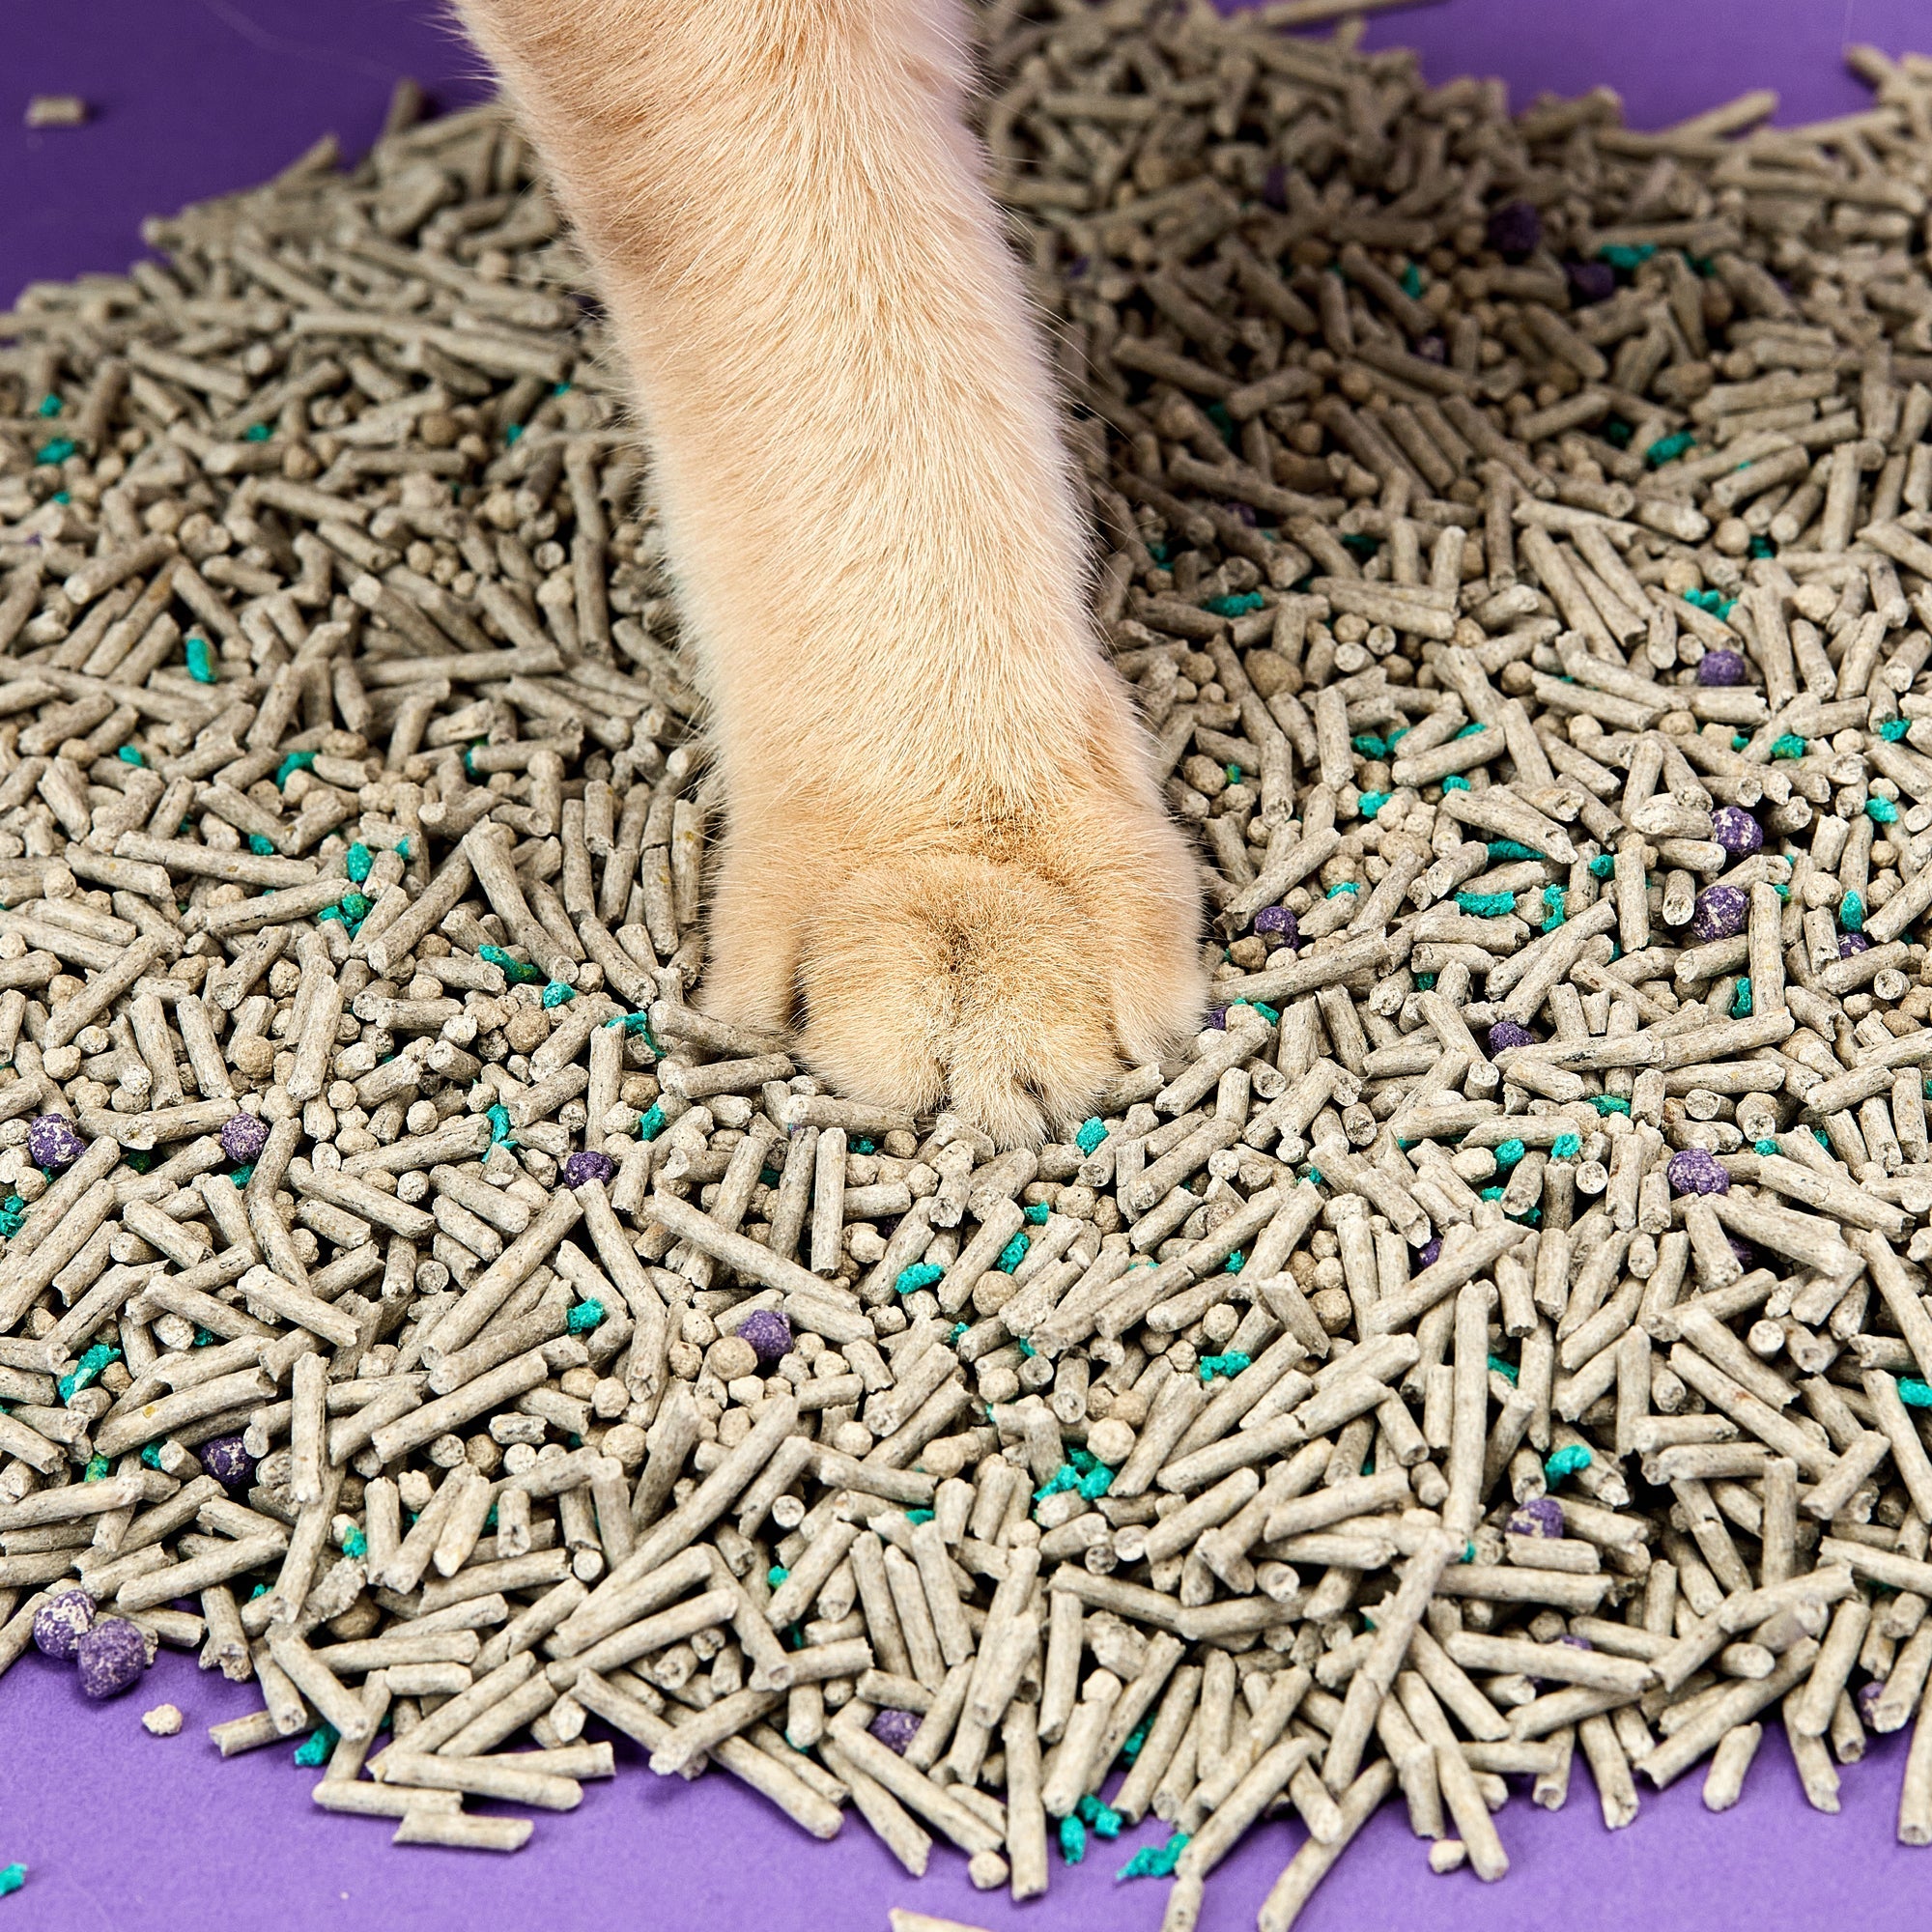 Everclean Flushable Cat Litters